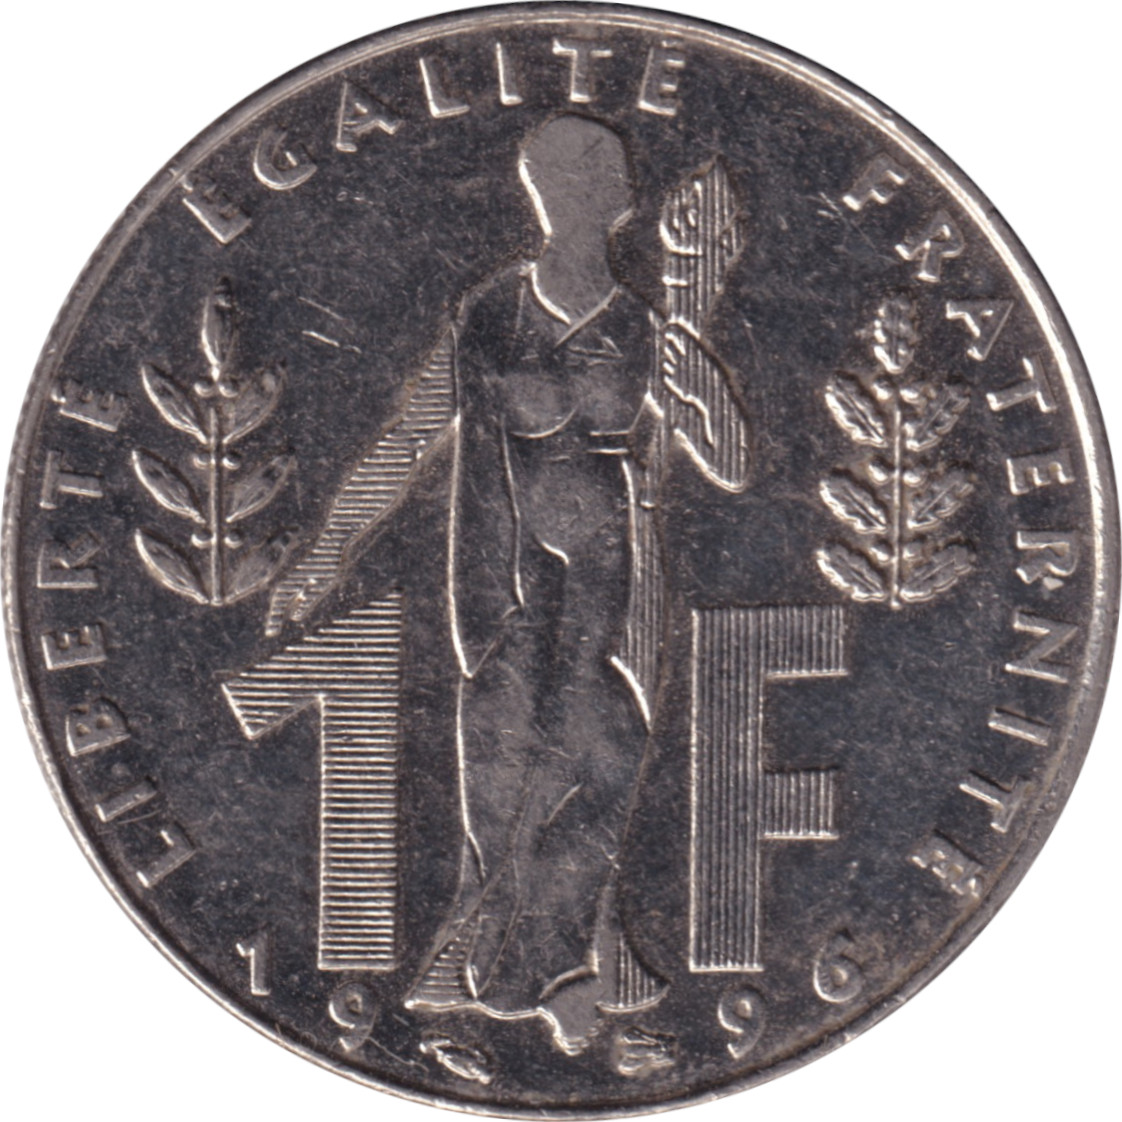 1 franc - Jacques Rueff